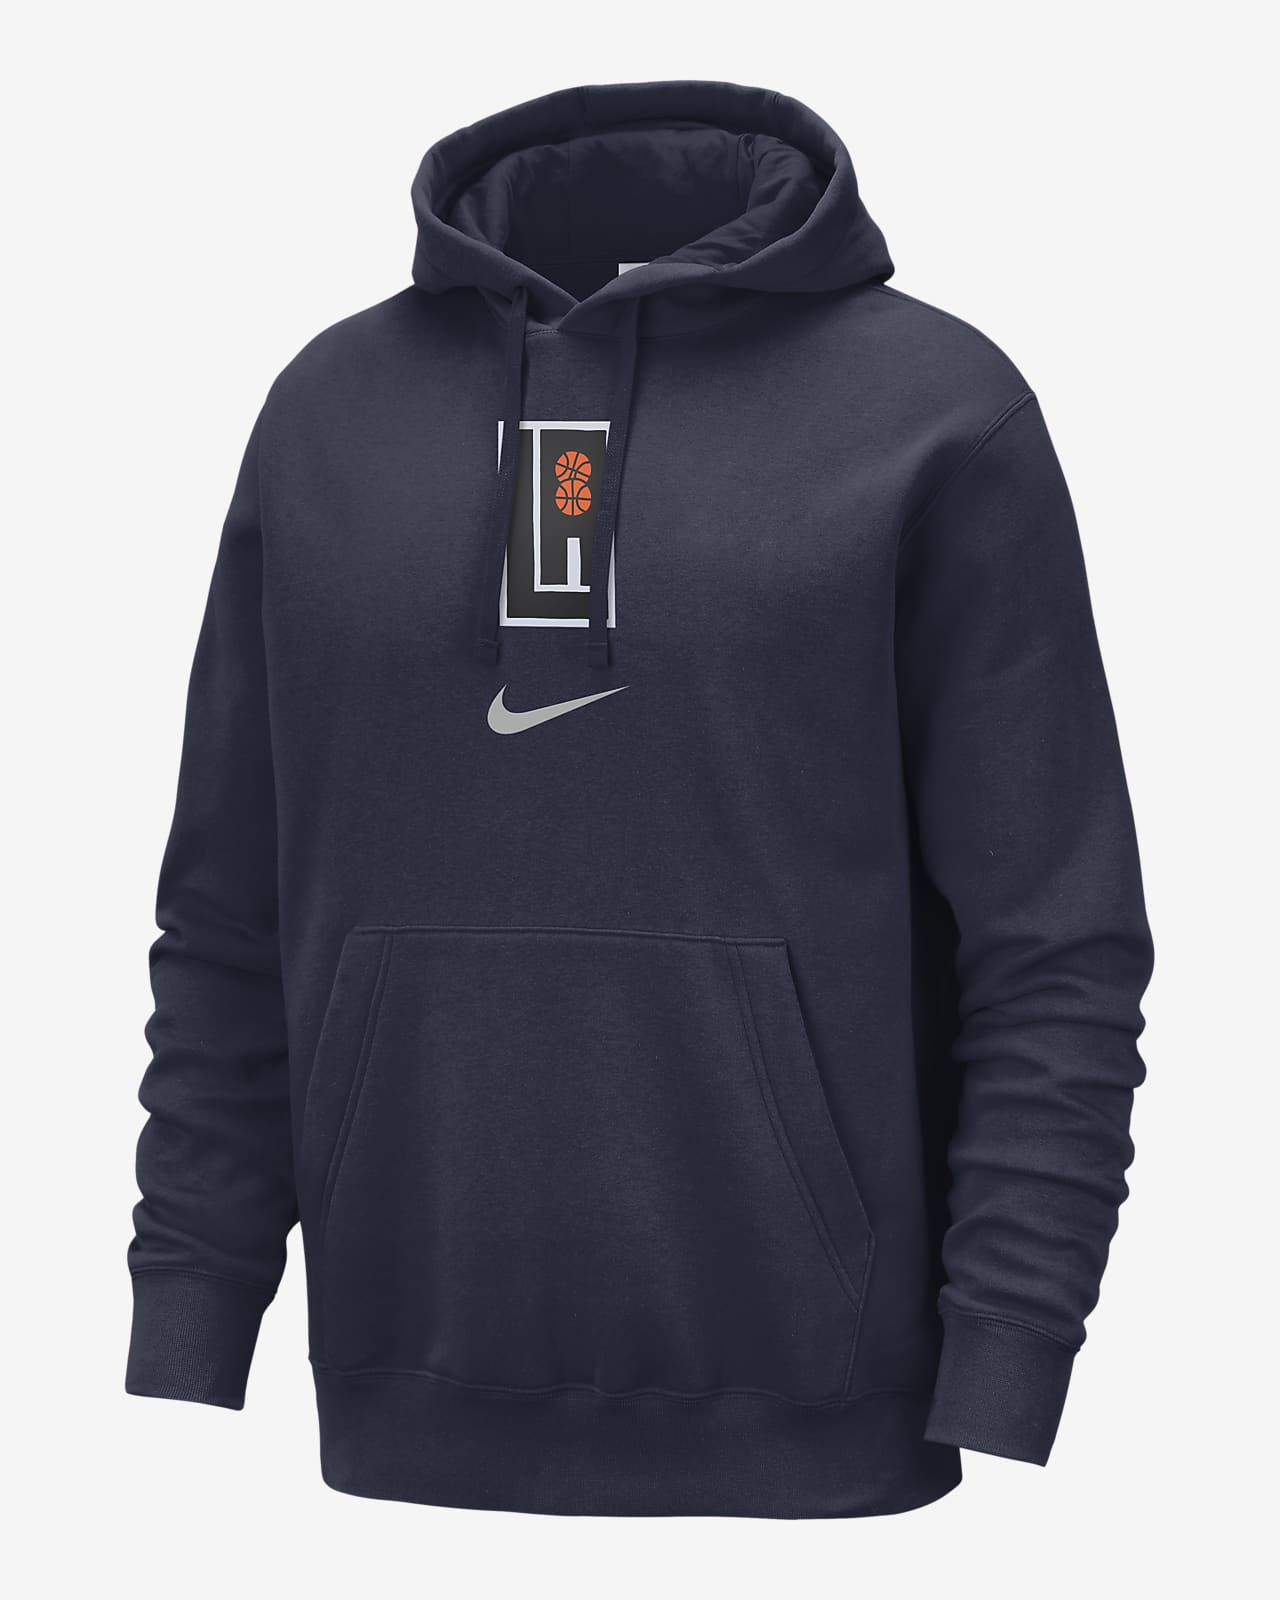 LA Clippers Club Fleece City Edition Nike NBA-hoodie voor heren